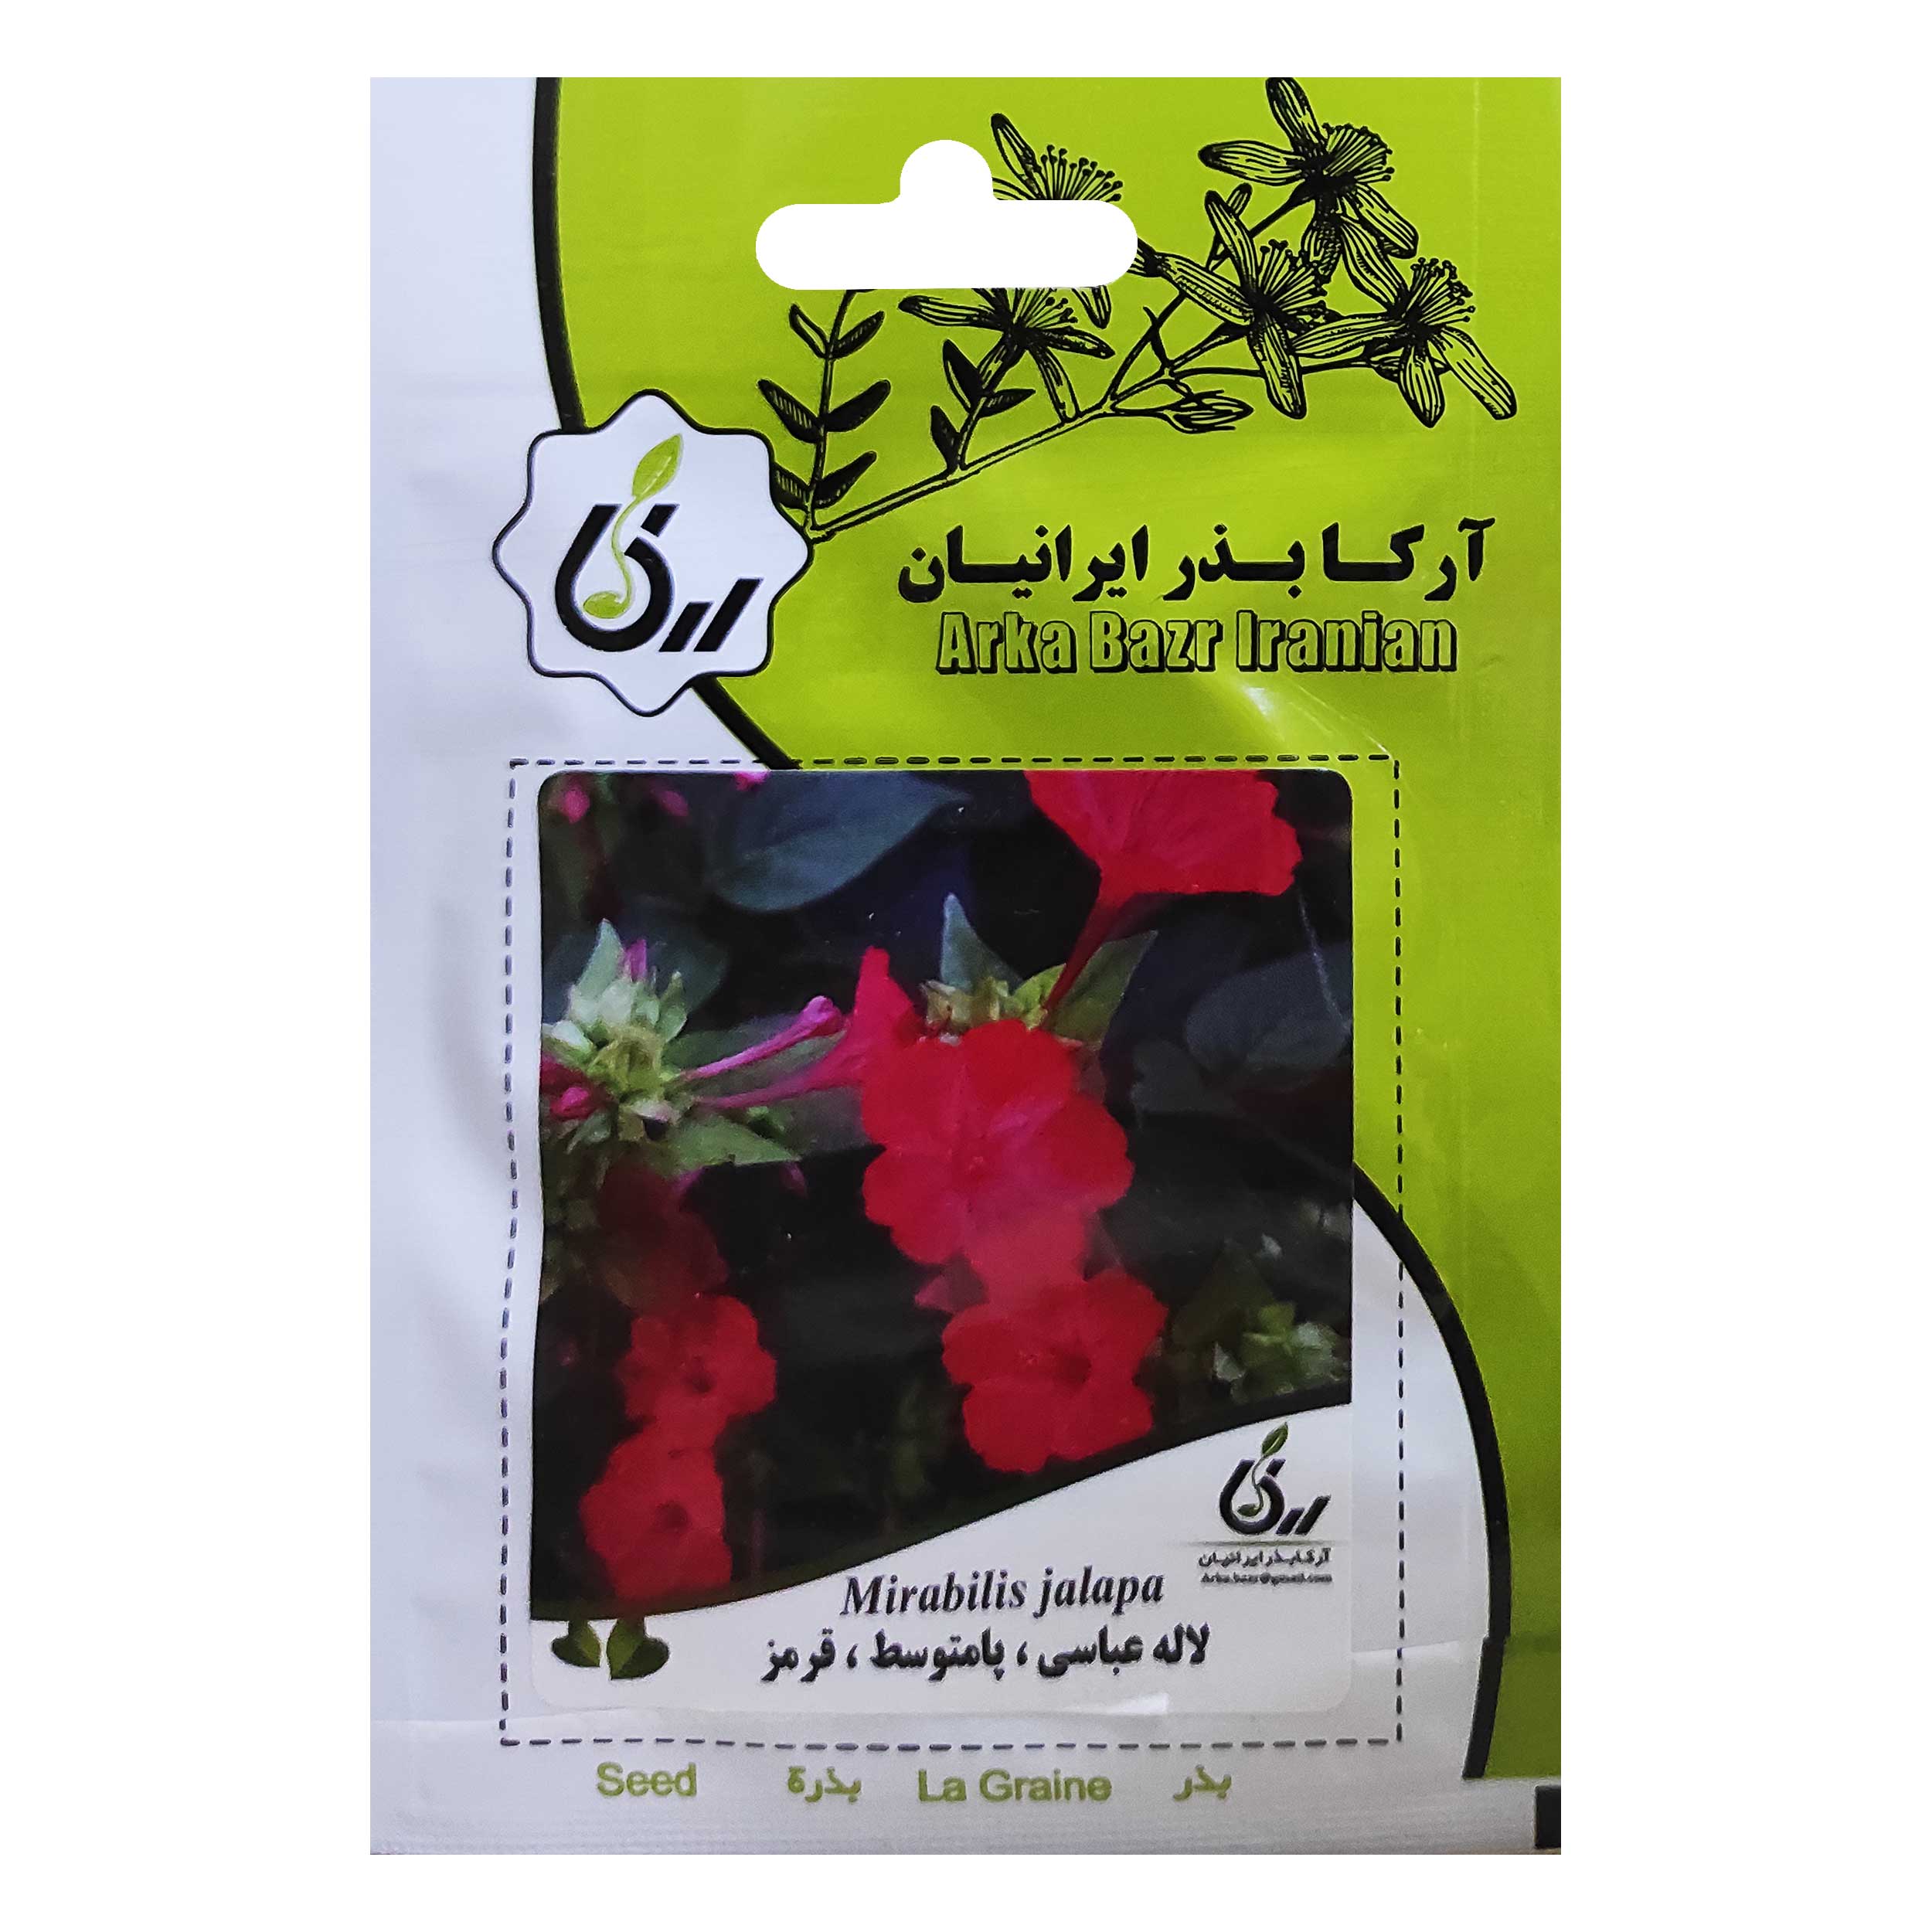 بذر گل لاله عباسی پامتوسط قرمز آرکا بذر ایرانیان کد ARK-009 